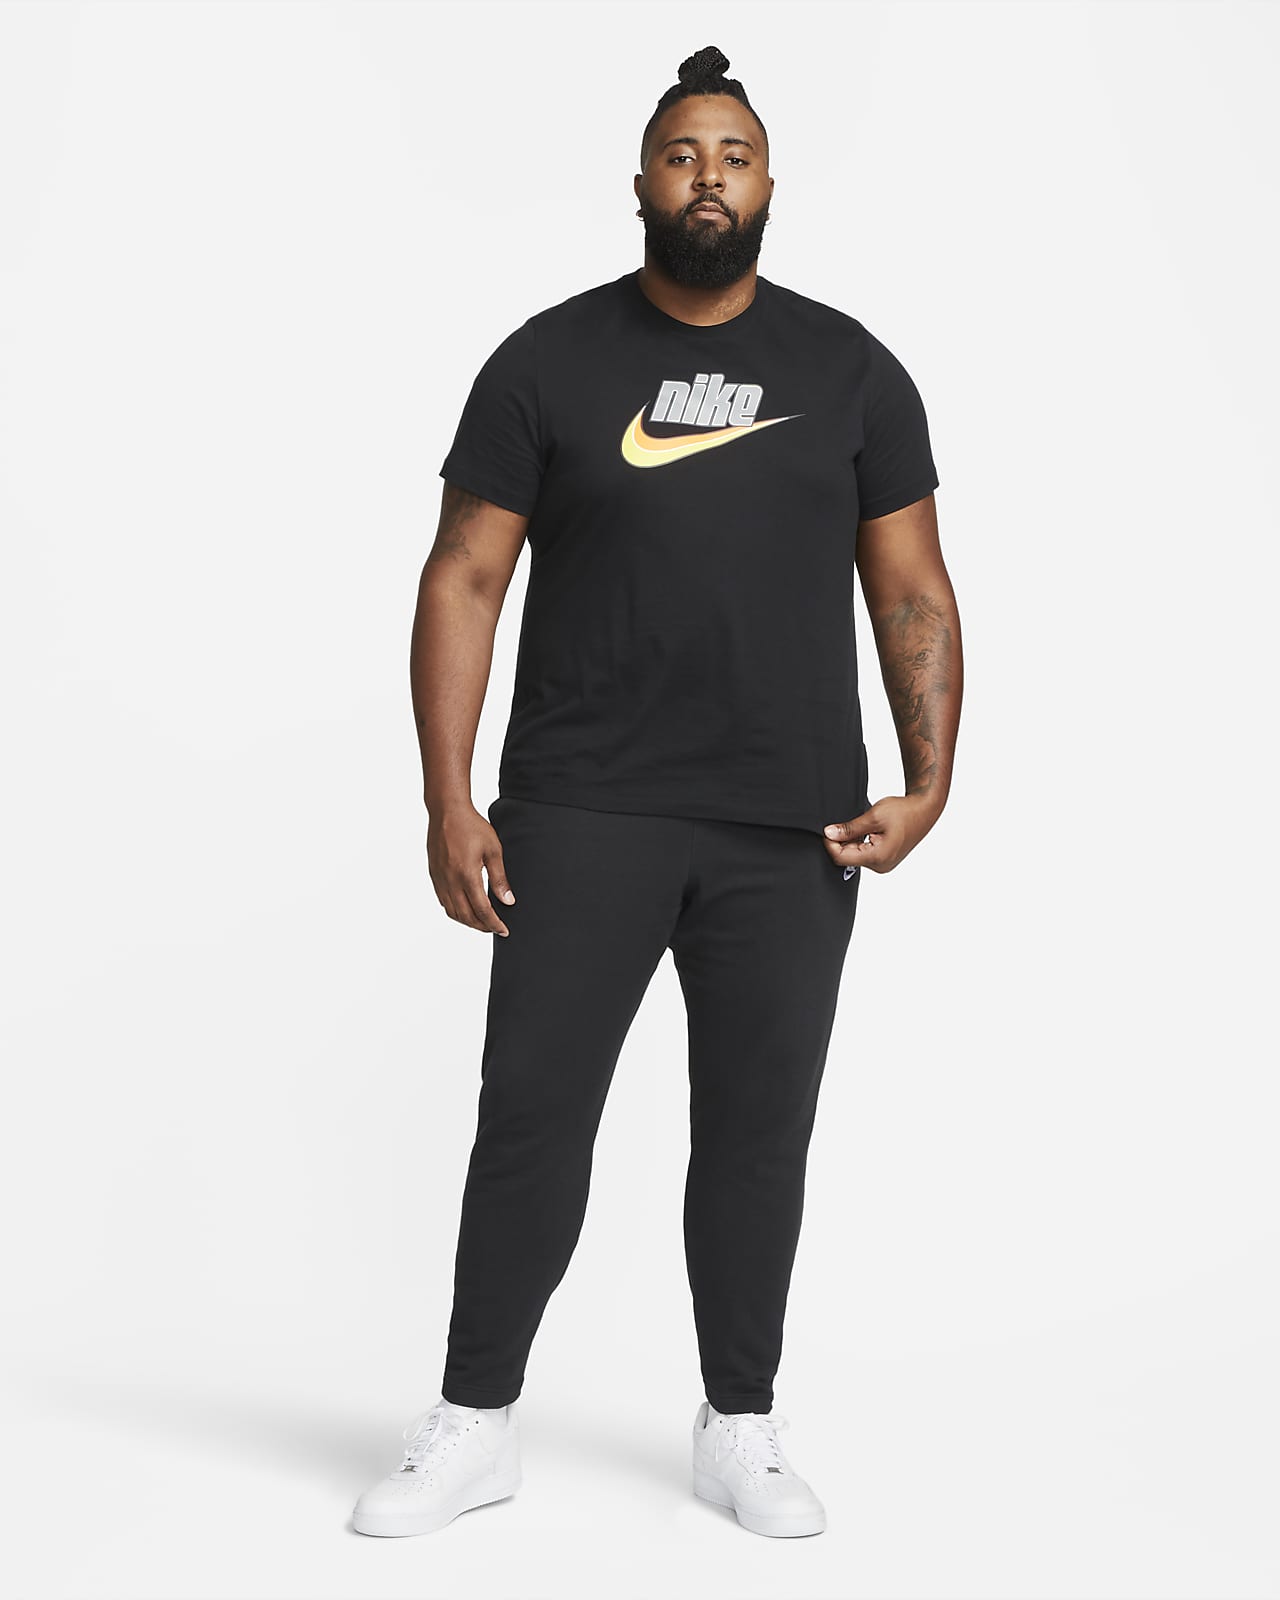 Nike spodnie męskie M NSW Club Pant CF BB BV2737 410